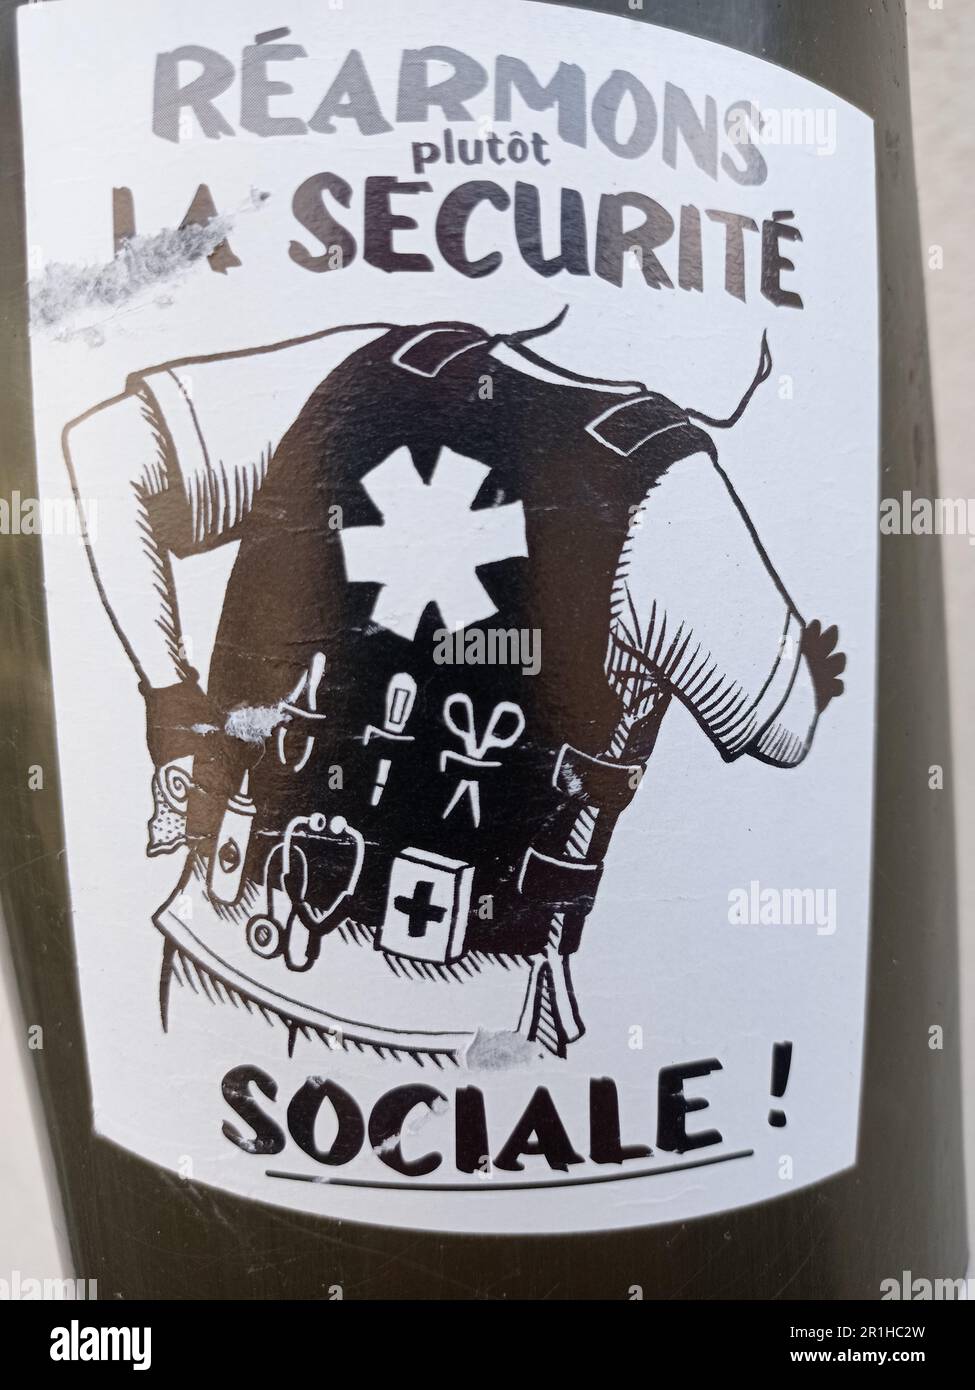 UN autocollant Réarmons plutôt la Sécurité Sociale, Frankreich Stockfoto